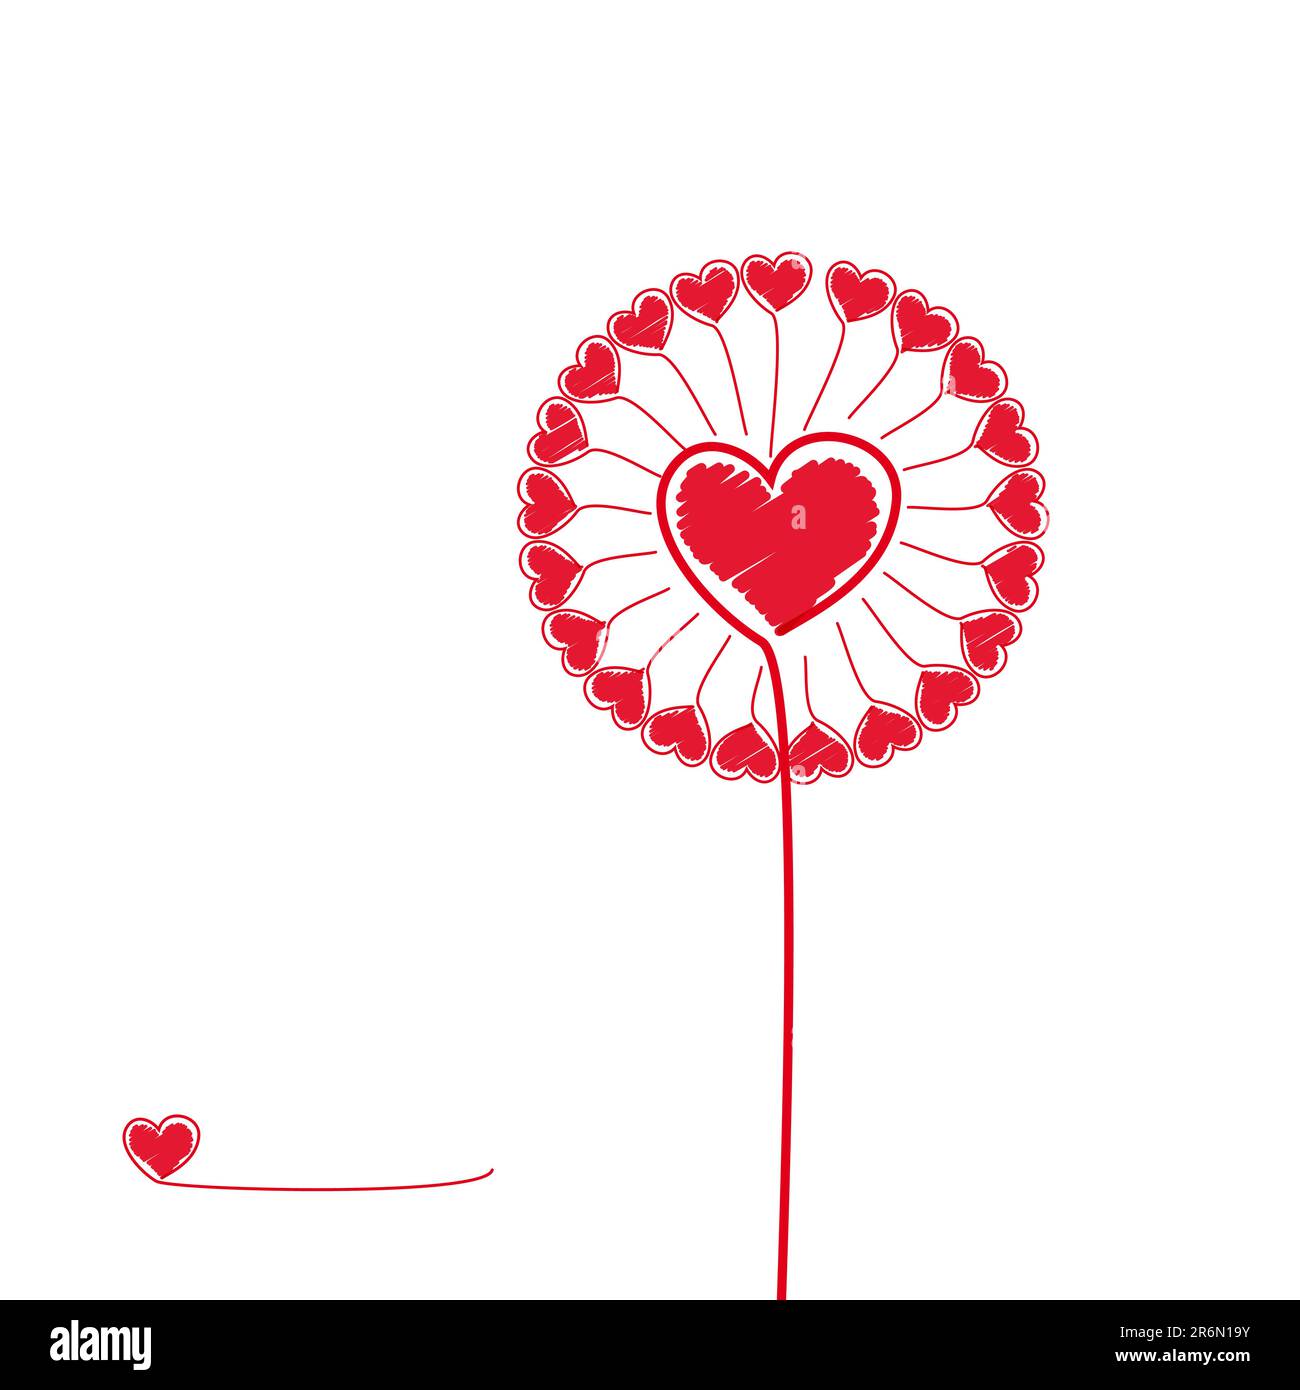 Love Flower Illustration for your design. Stock Vector